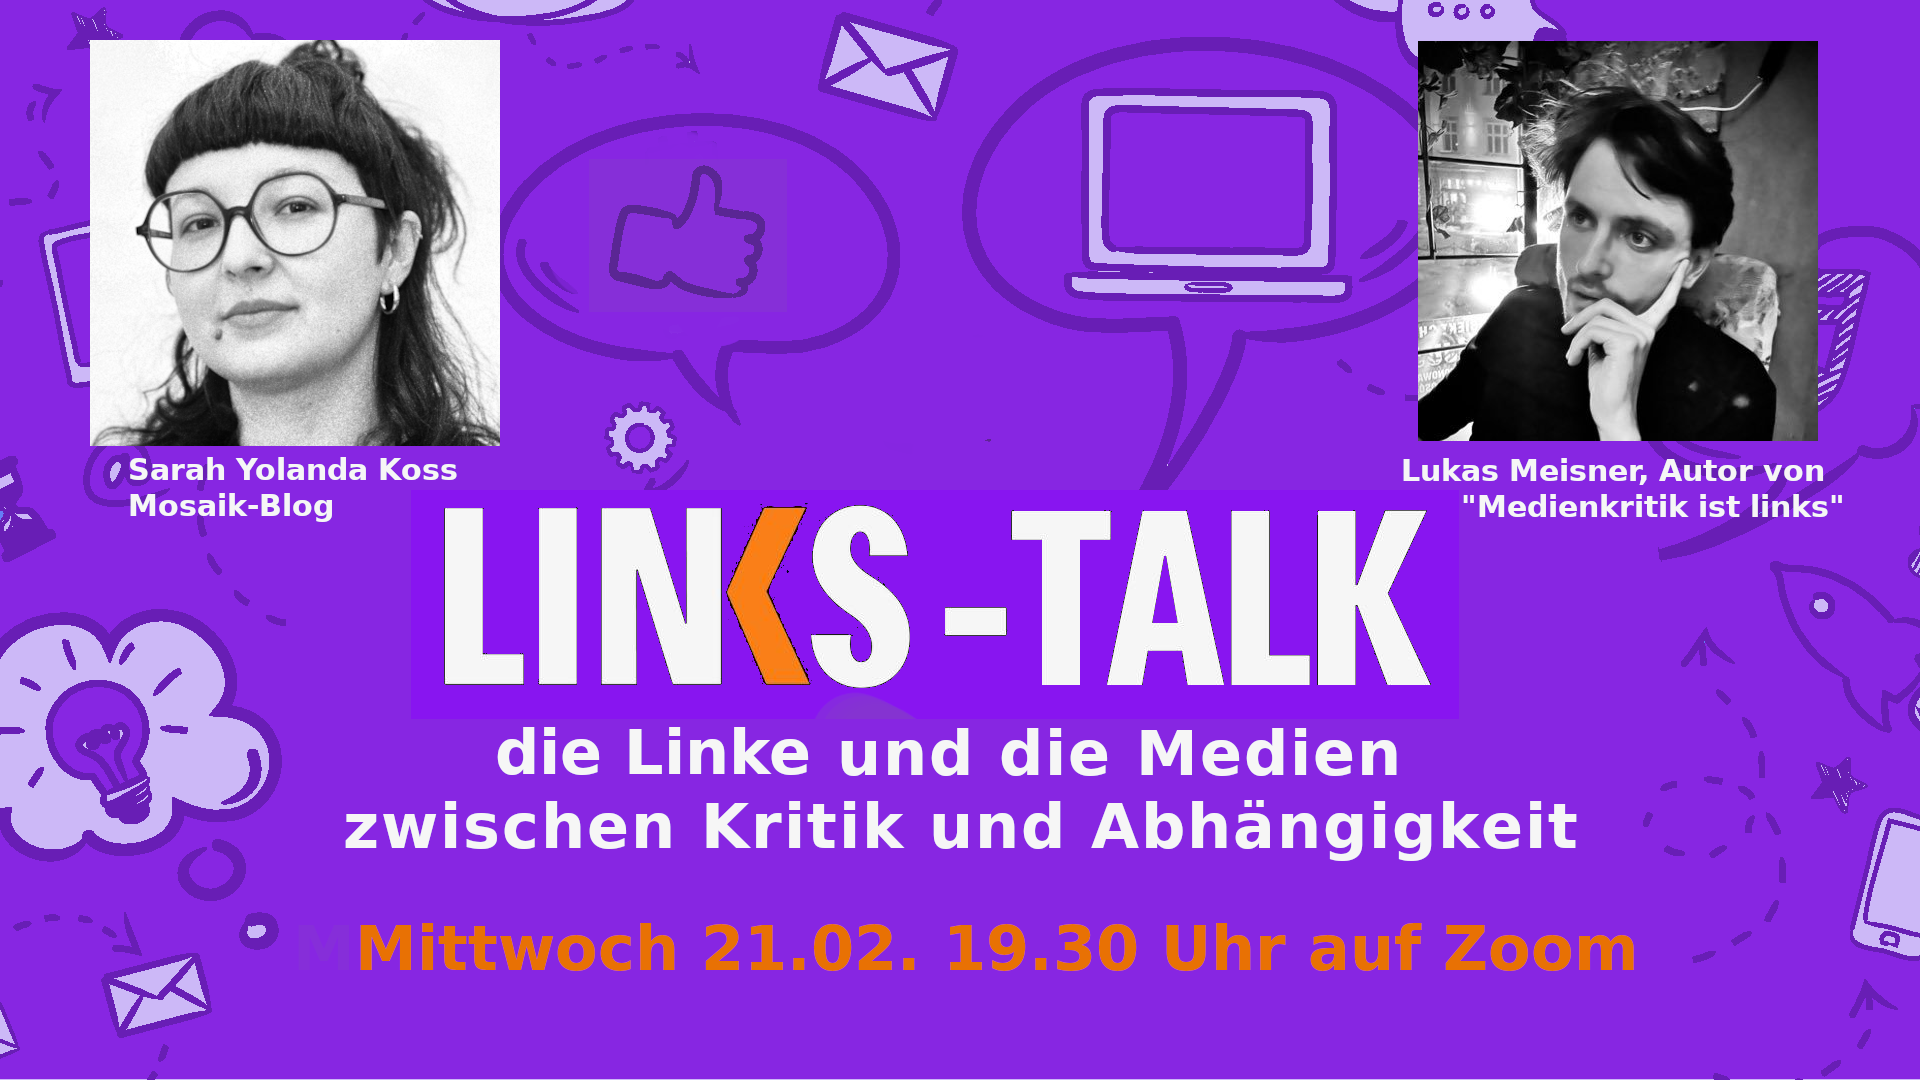 LINKS-Talk: die Linke und die Medien - zwischen Kritik und Abhängigkeit